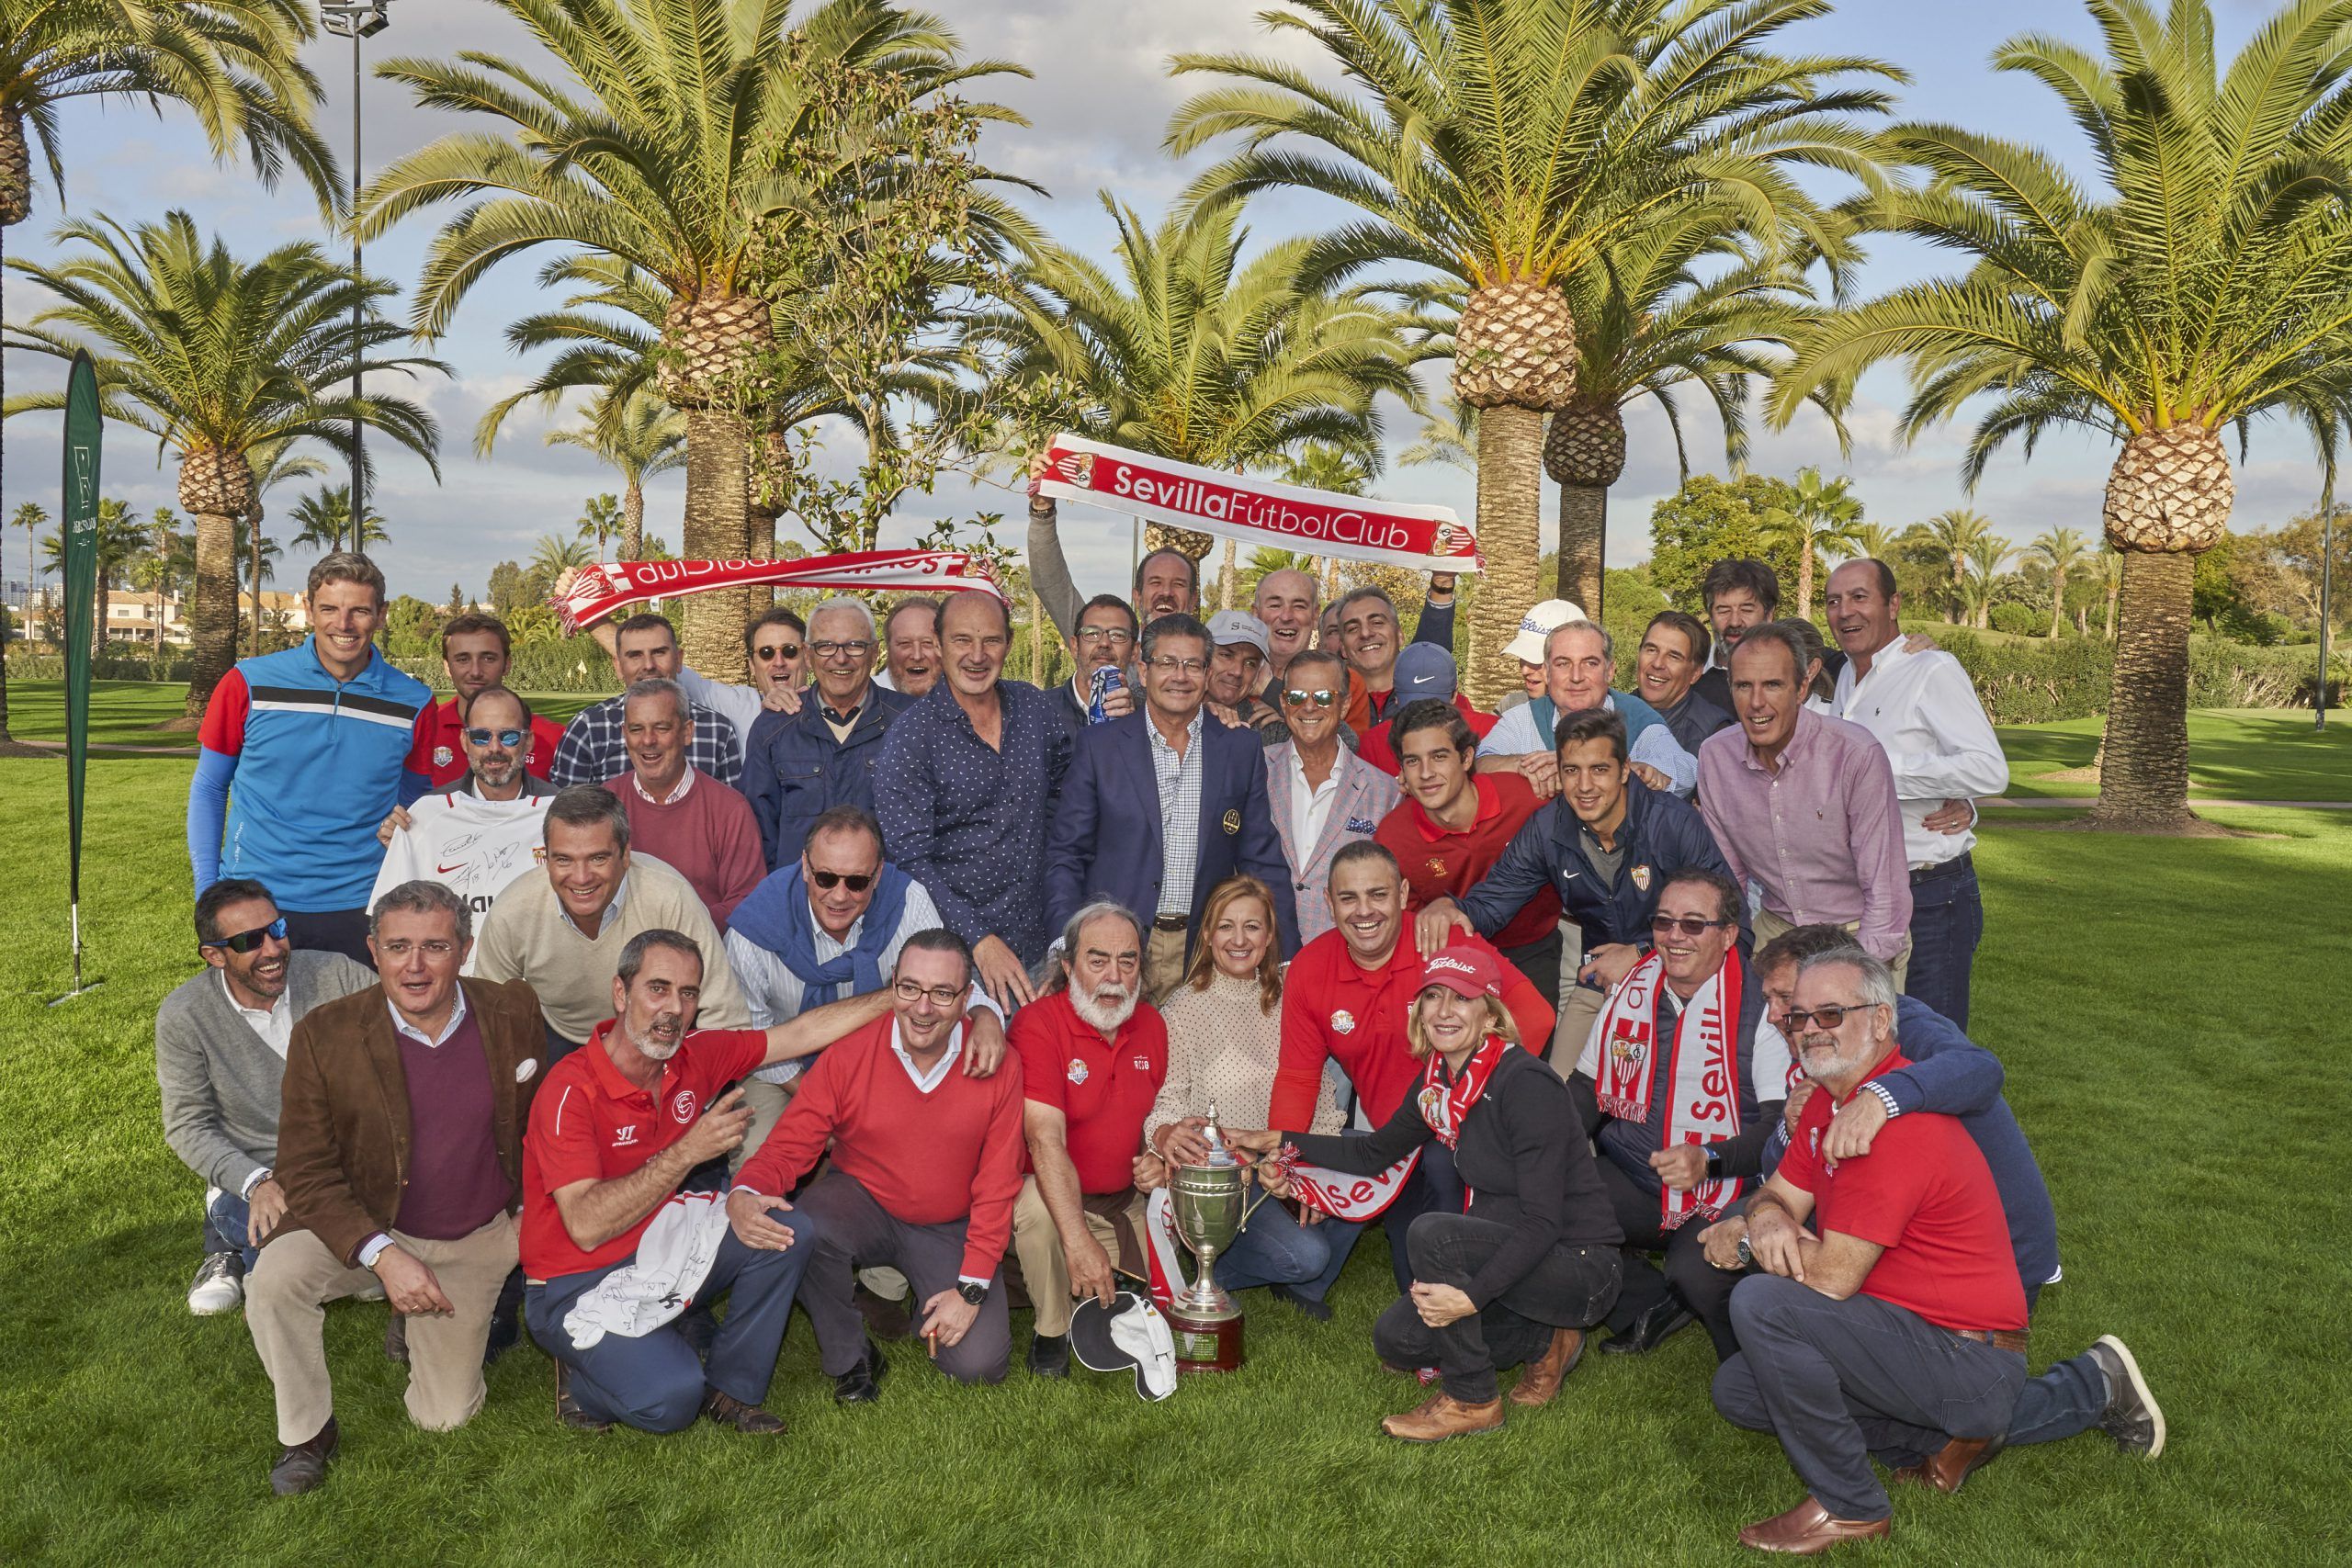 The Cup Sevilla-Betis, en el Real Club Sevilla Golf, lo gana por segundo año consecutivo el equipo del Sevilla FC, con un resultado muy ajustado